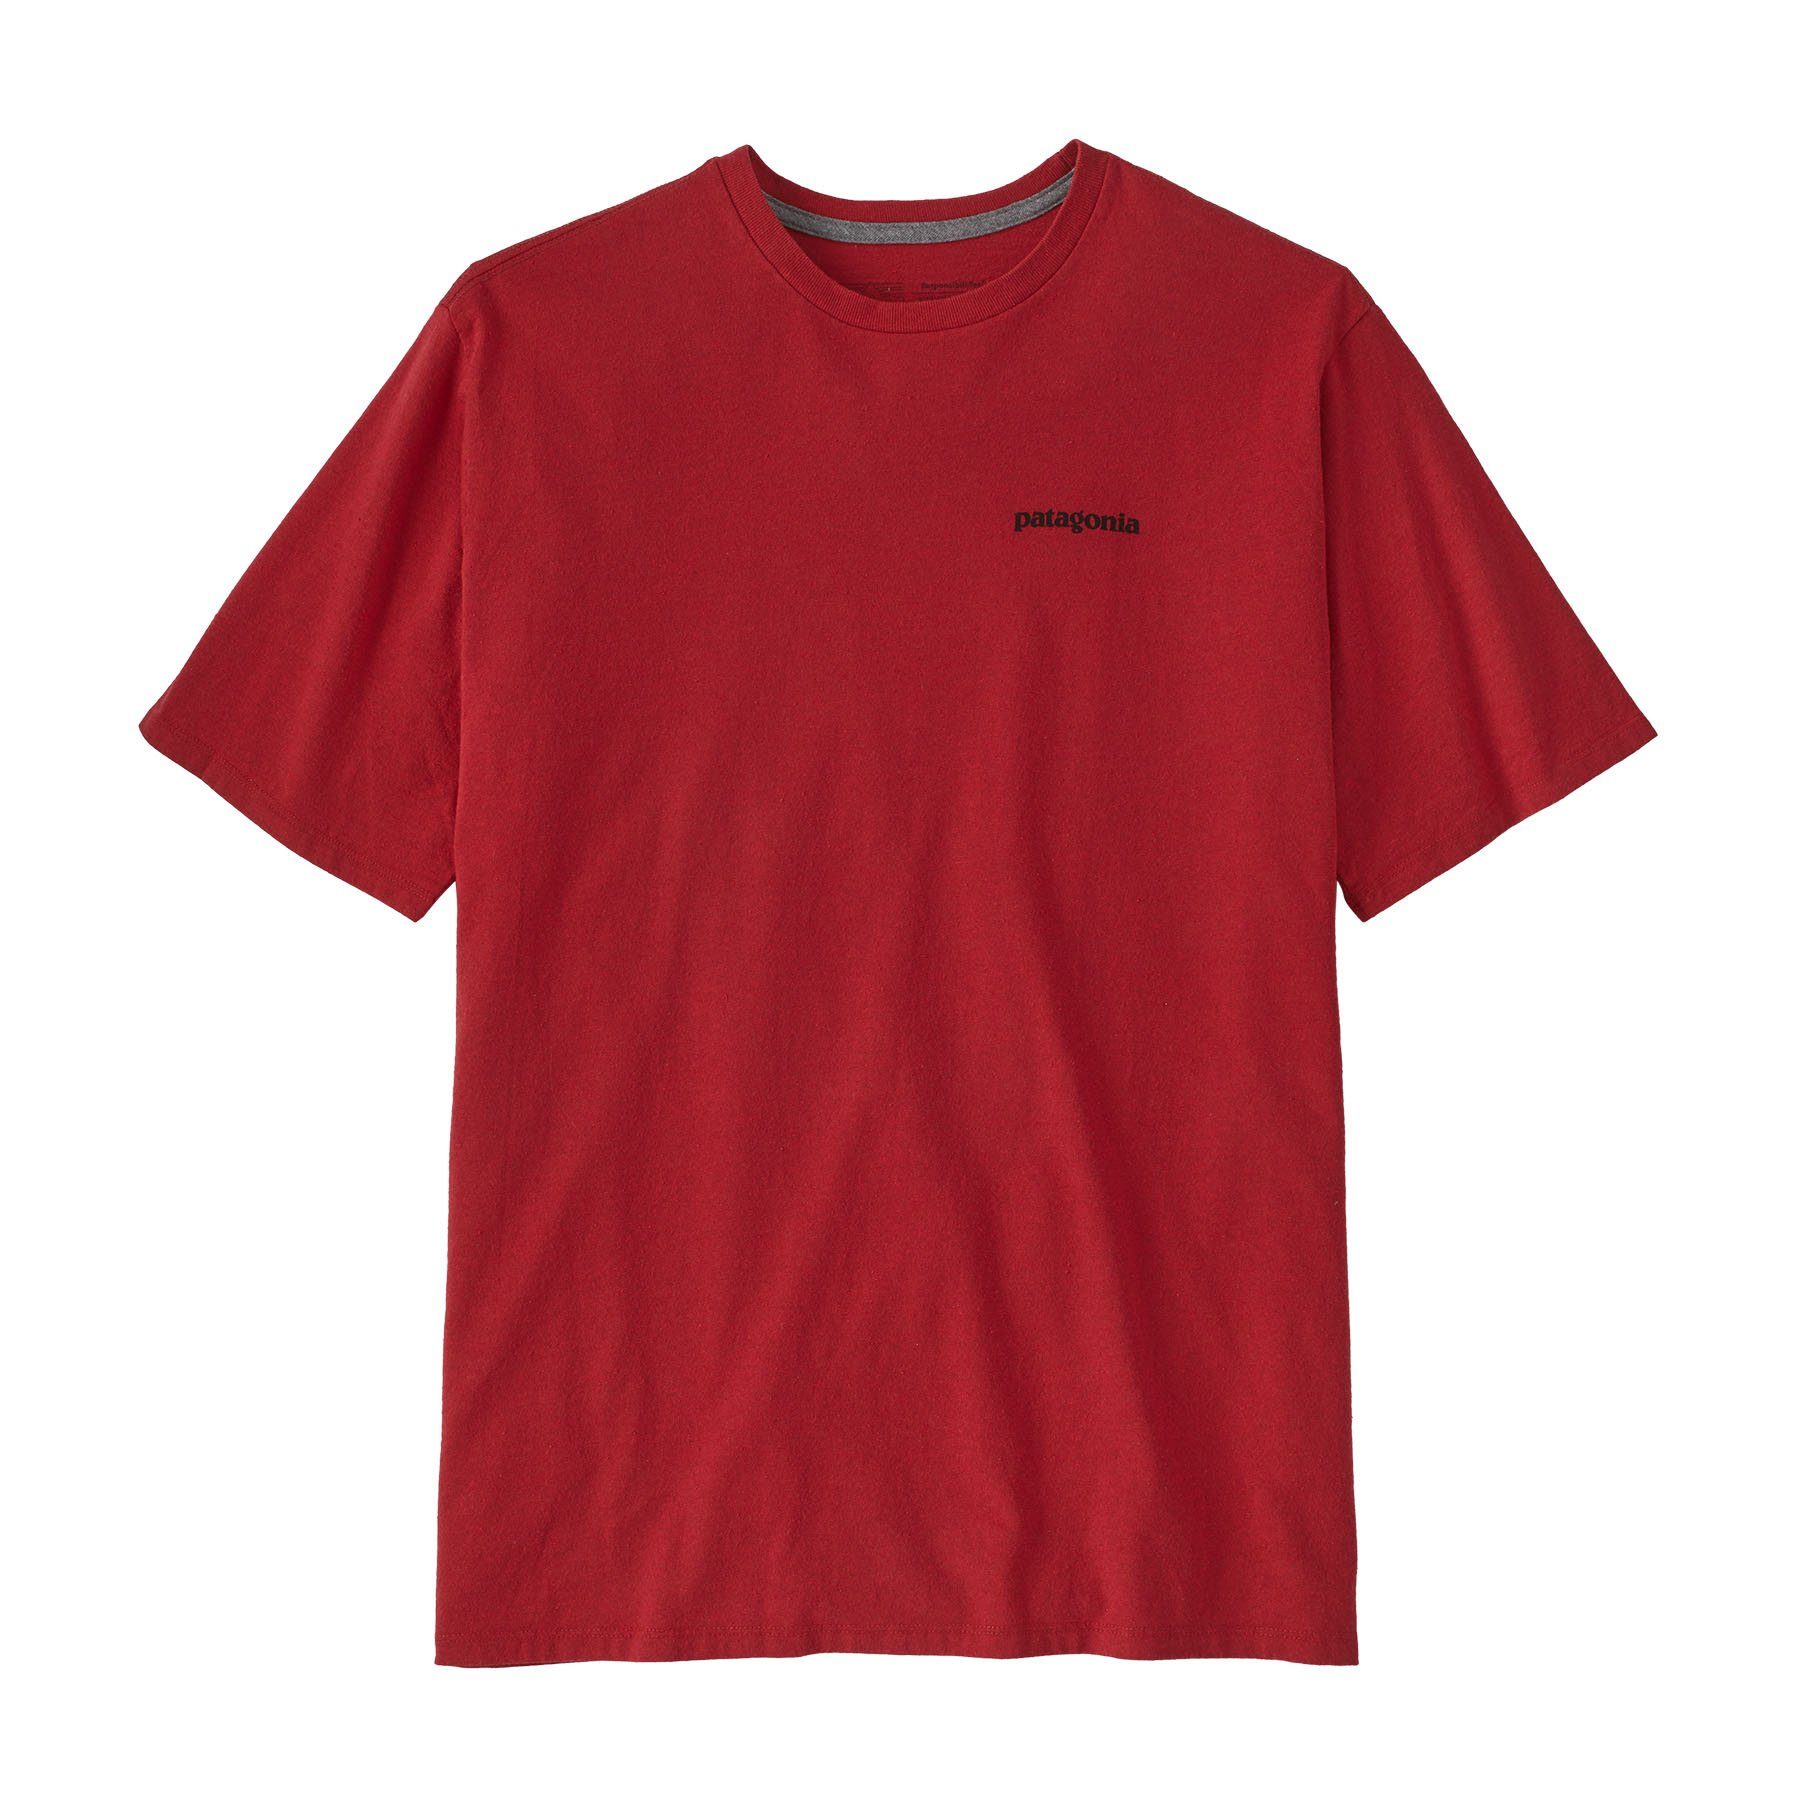 Adult Logo Herren Responsibili-Tee Patagonia red touring P-6 T-Shirt Patagonia T-Shirt